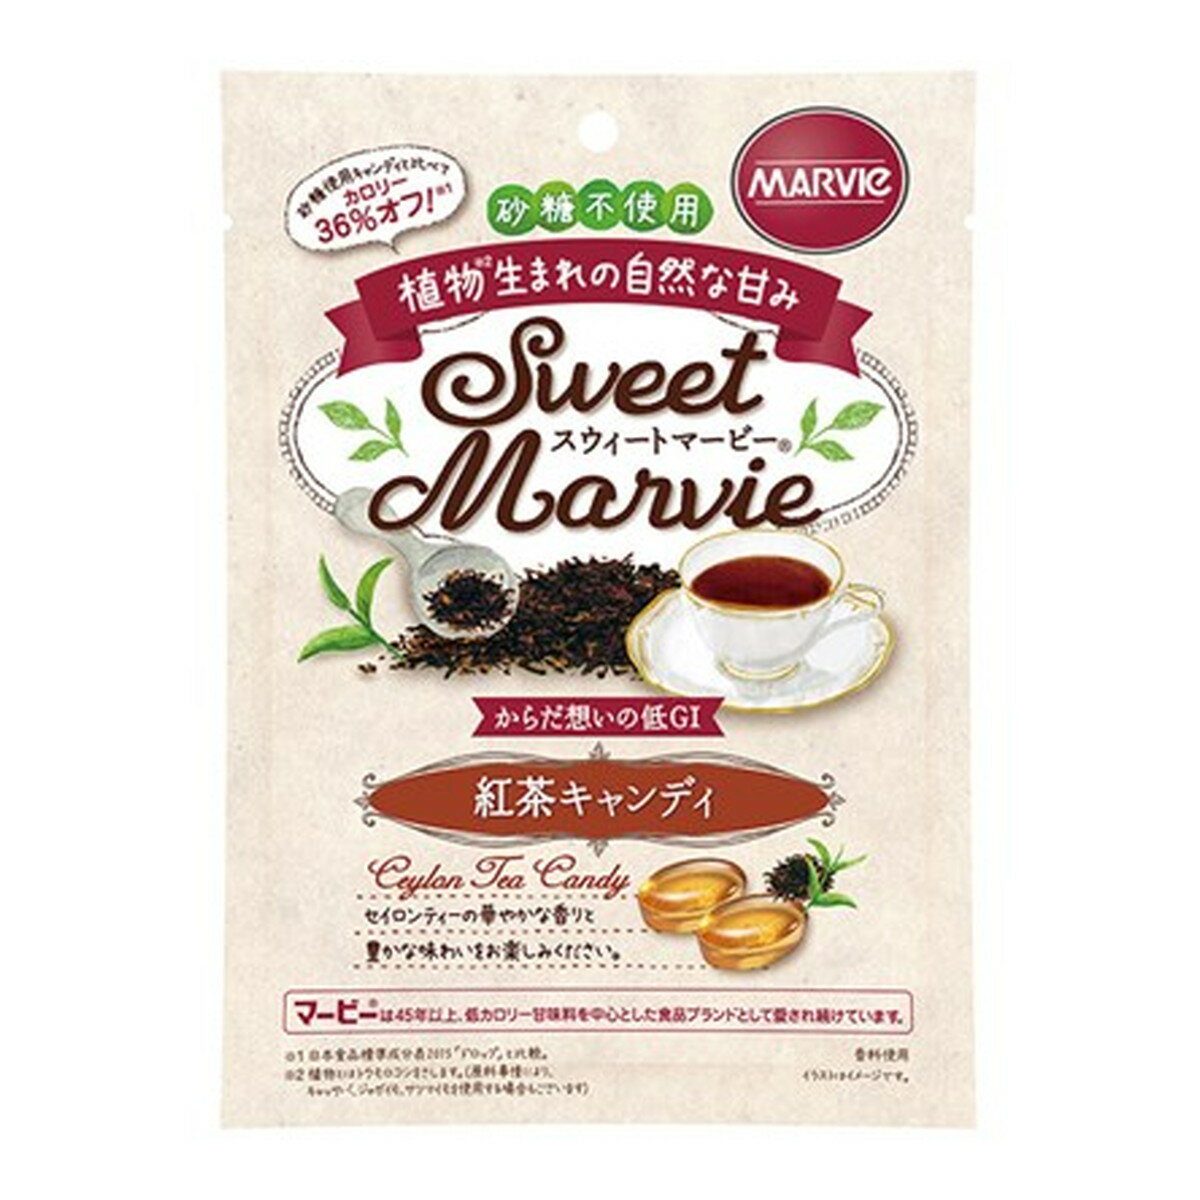 商品名：ハーバー研究所 HABA スウィート マービー 紅茶 キャンディ 49g内容量：49gJANコード：4534551012121発売元、製造元、輸入元又は販売元：ハーバー研究所原産国：日本商品番号：103-4534551012121商品説明植物生まれの甘味料『マービー』の自然な甘さをいっそう引き出すように　工夫しました。　セイロンティーの華やかな香り。広告文責：アットライフ株式会社TEL 050-3196-1510 ※商品パッケージは変更の場合あり。メーカー欠品または完売の際、キャンセルをお願いすることがあります。ご了承ください。